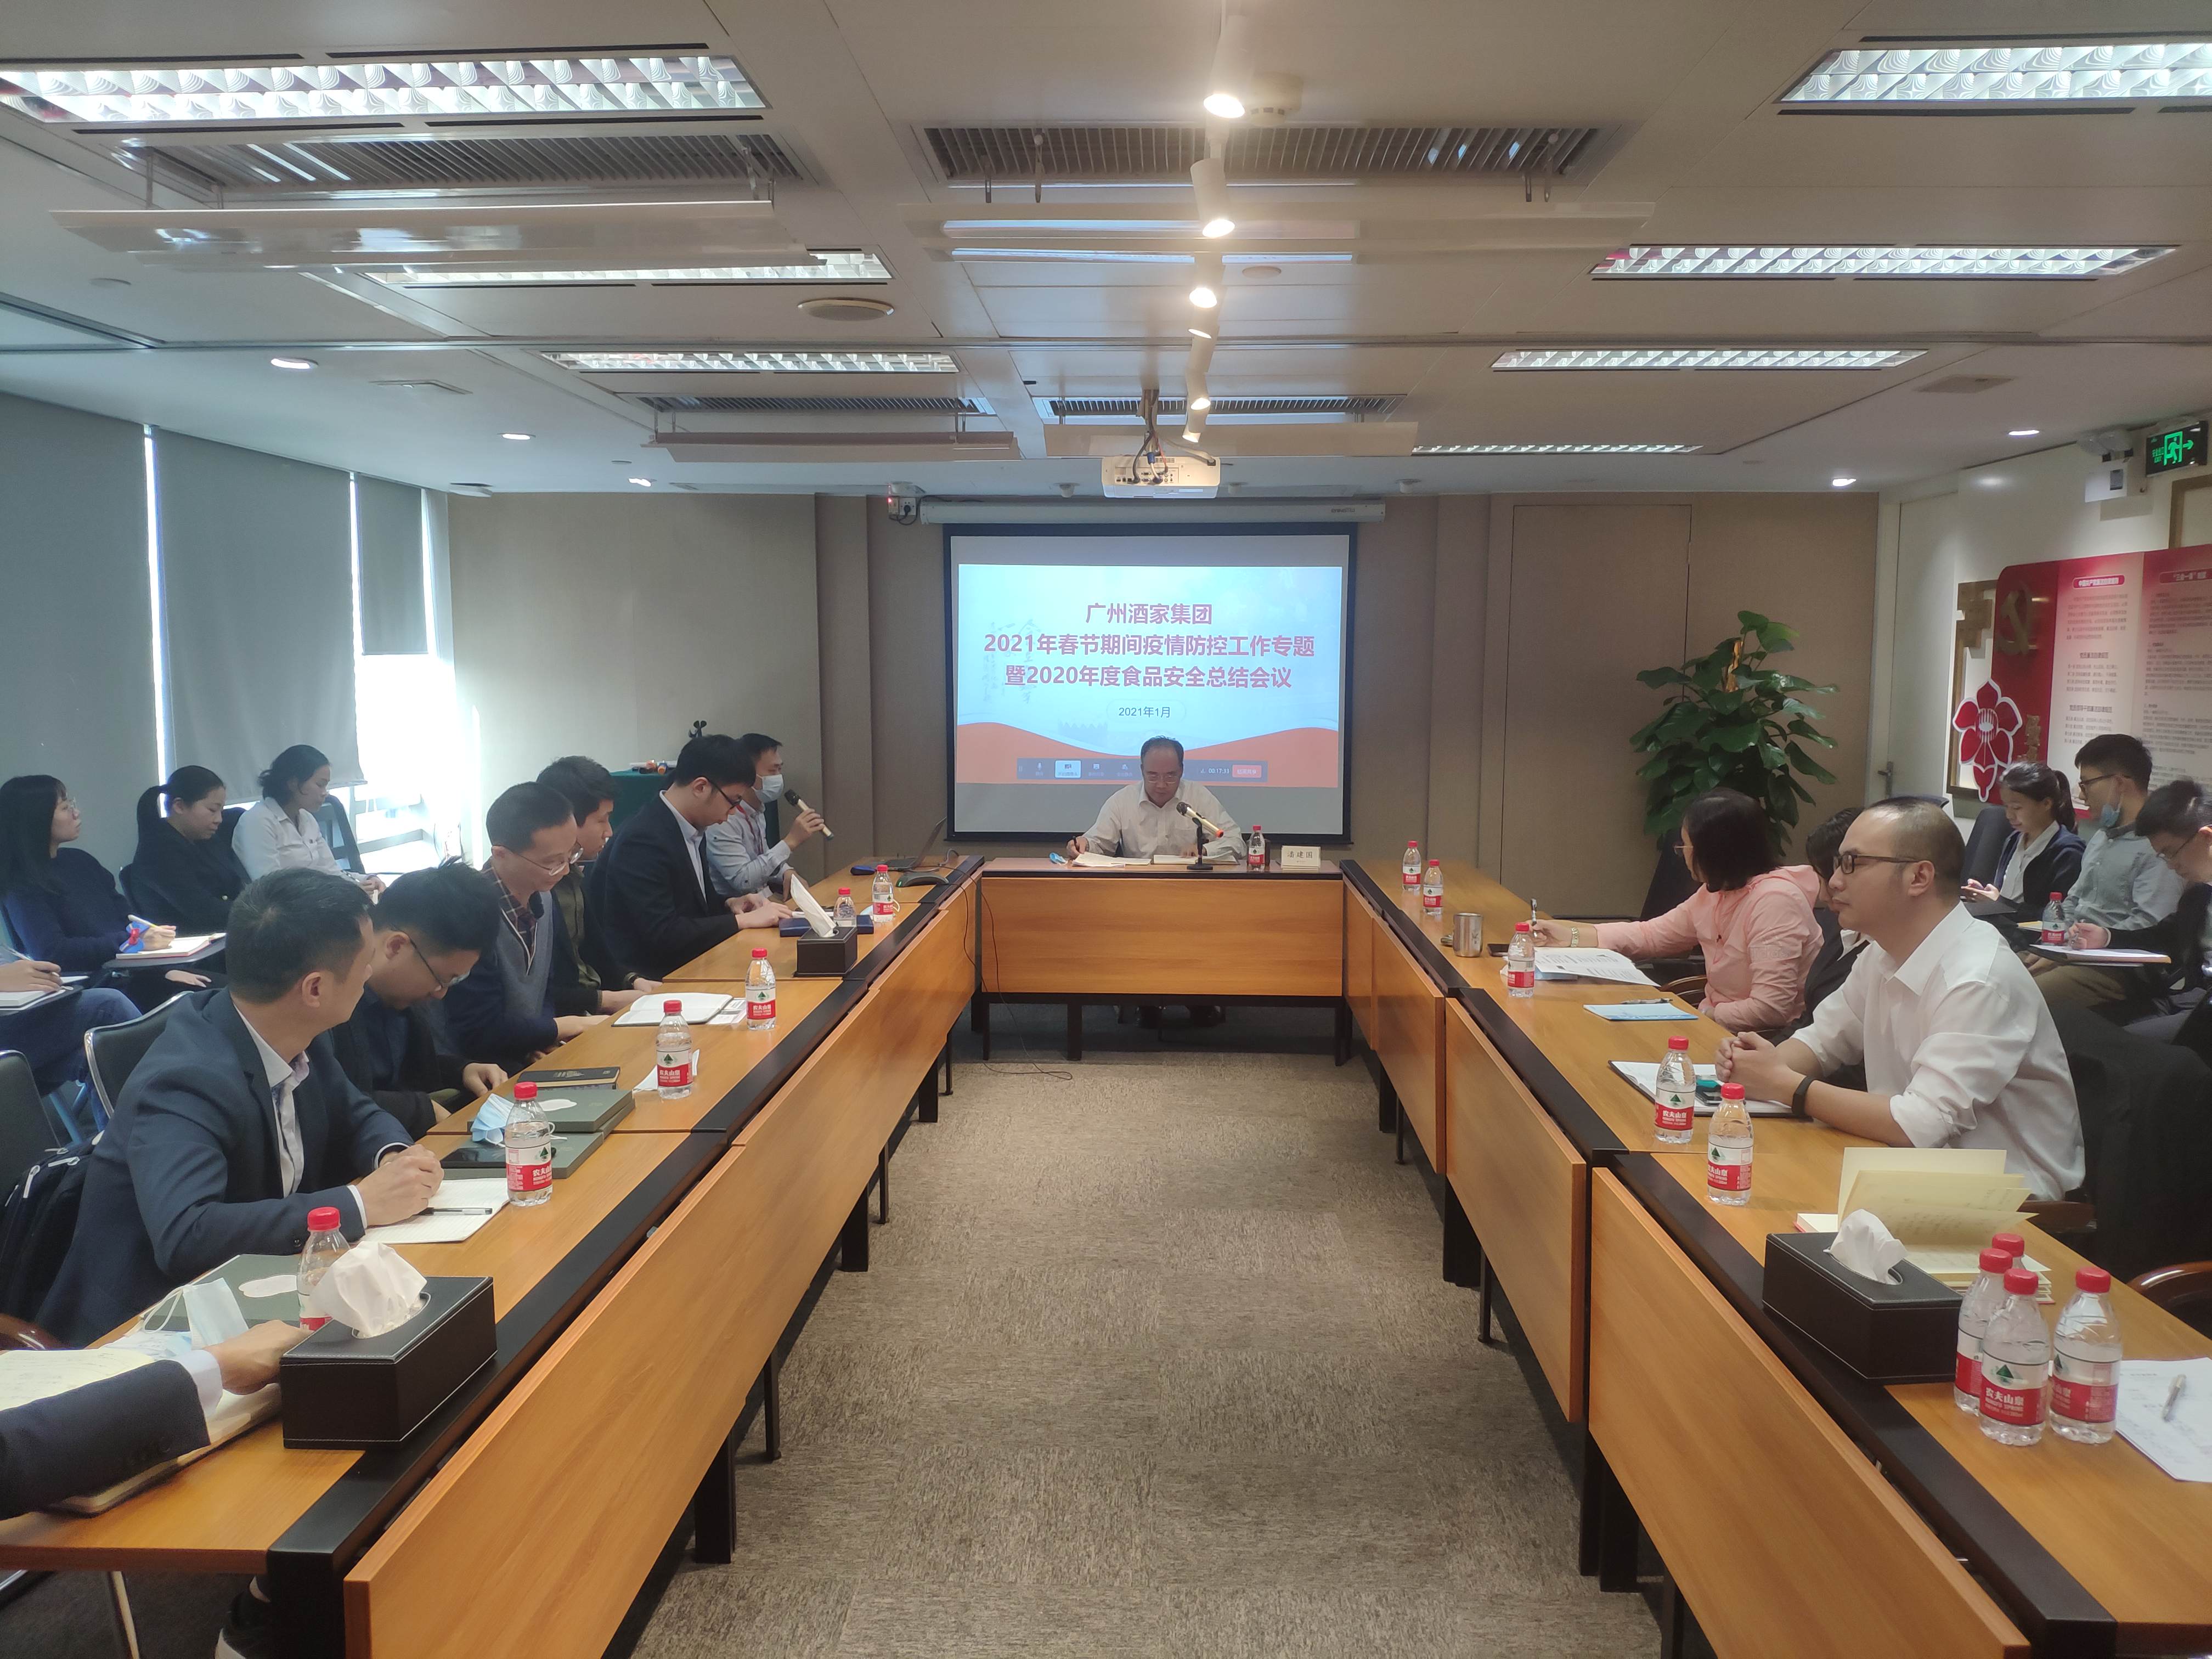 广州酒家集团召开2020年度食品安全工作总结暨疫情防控专题会议